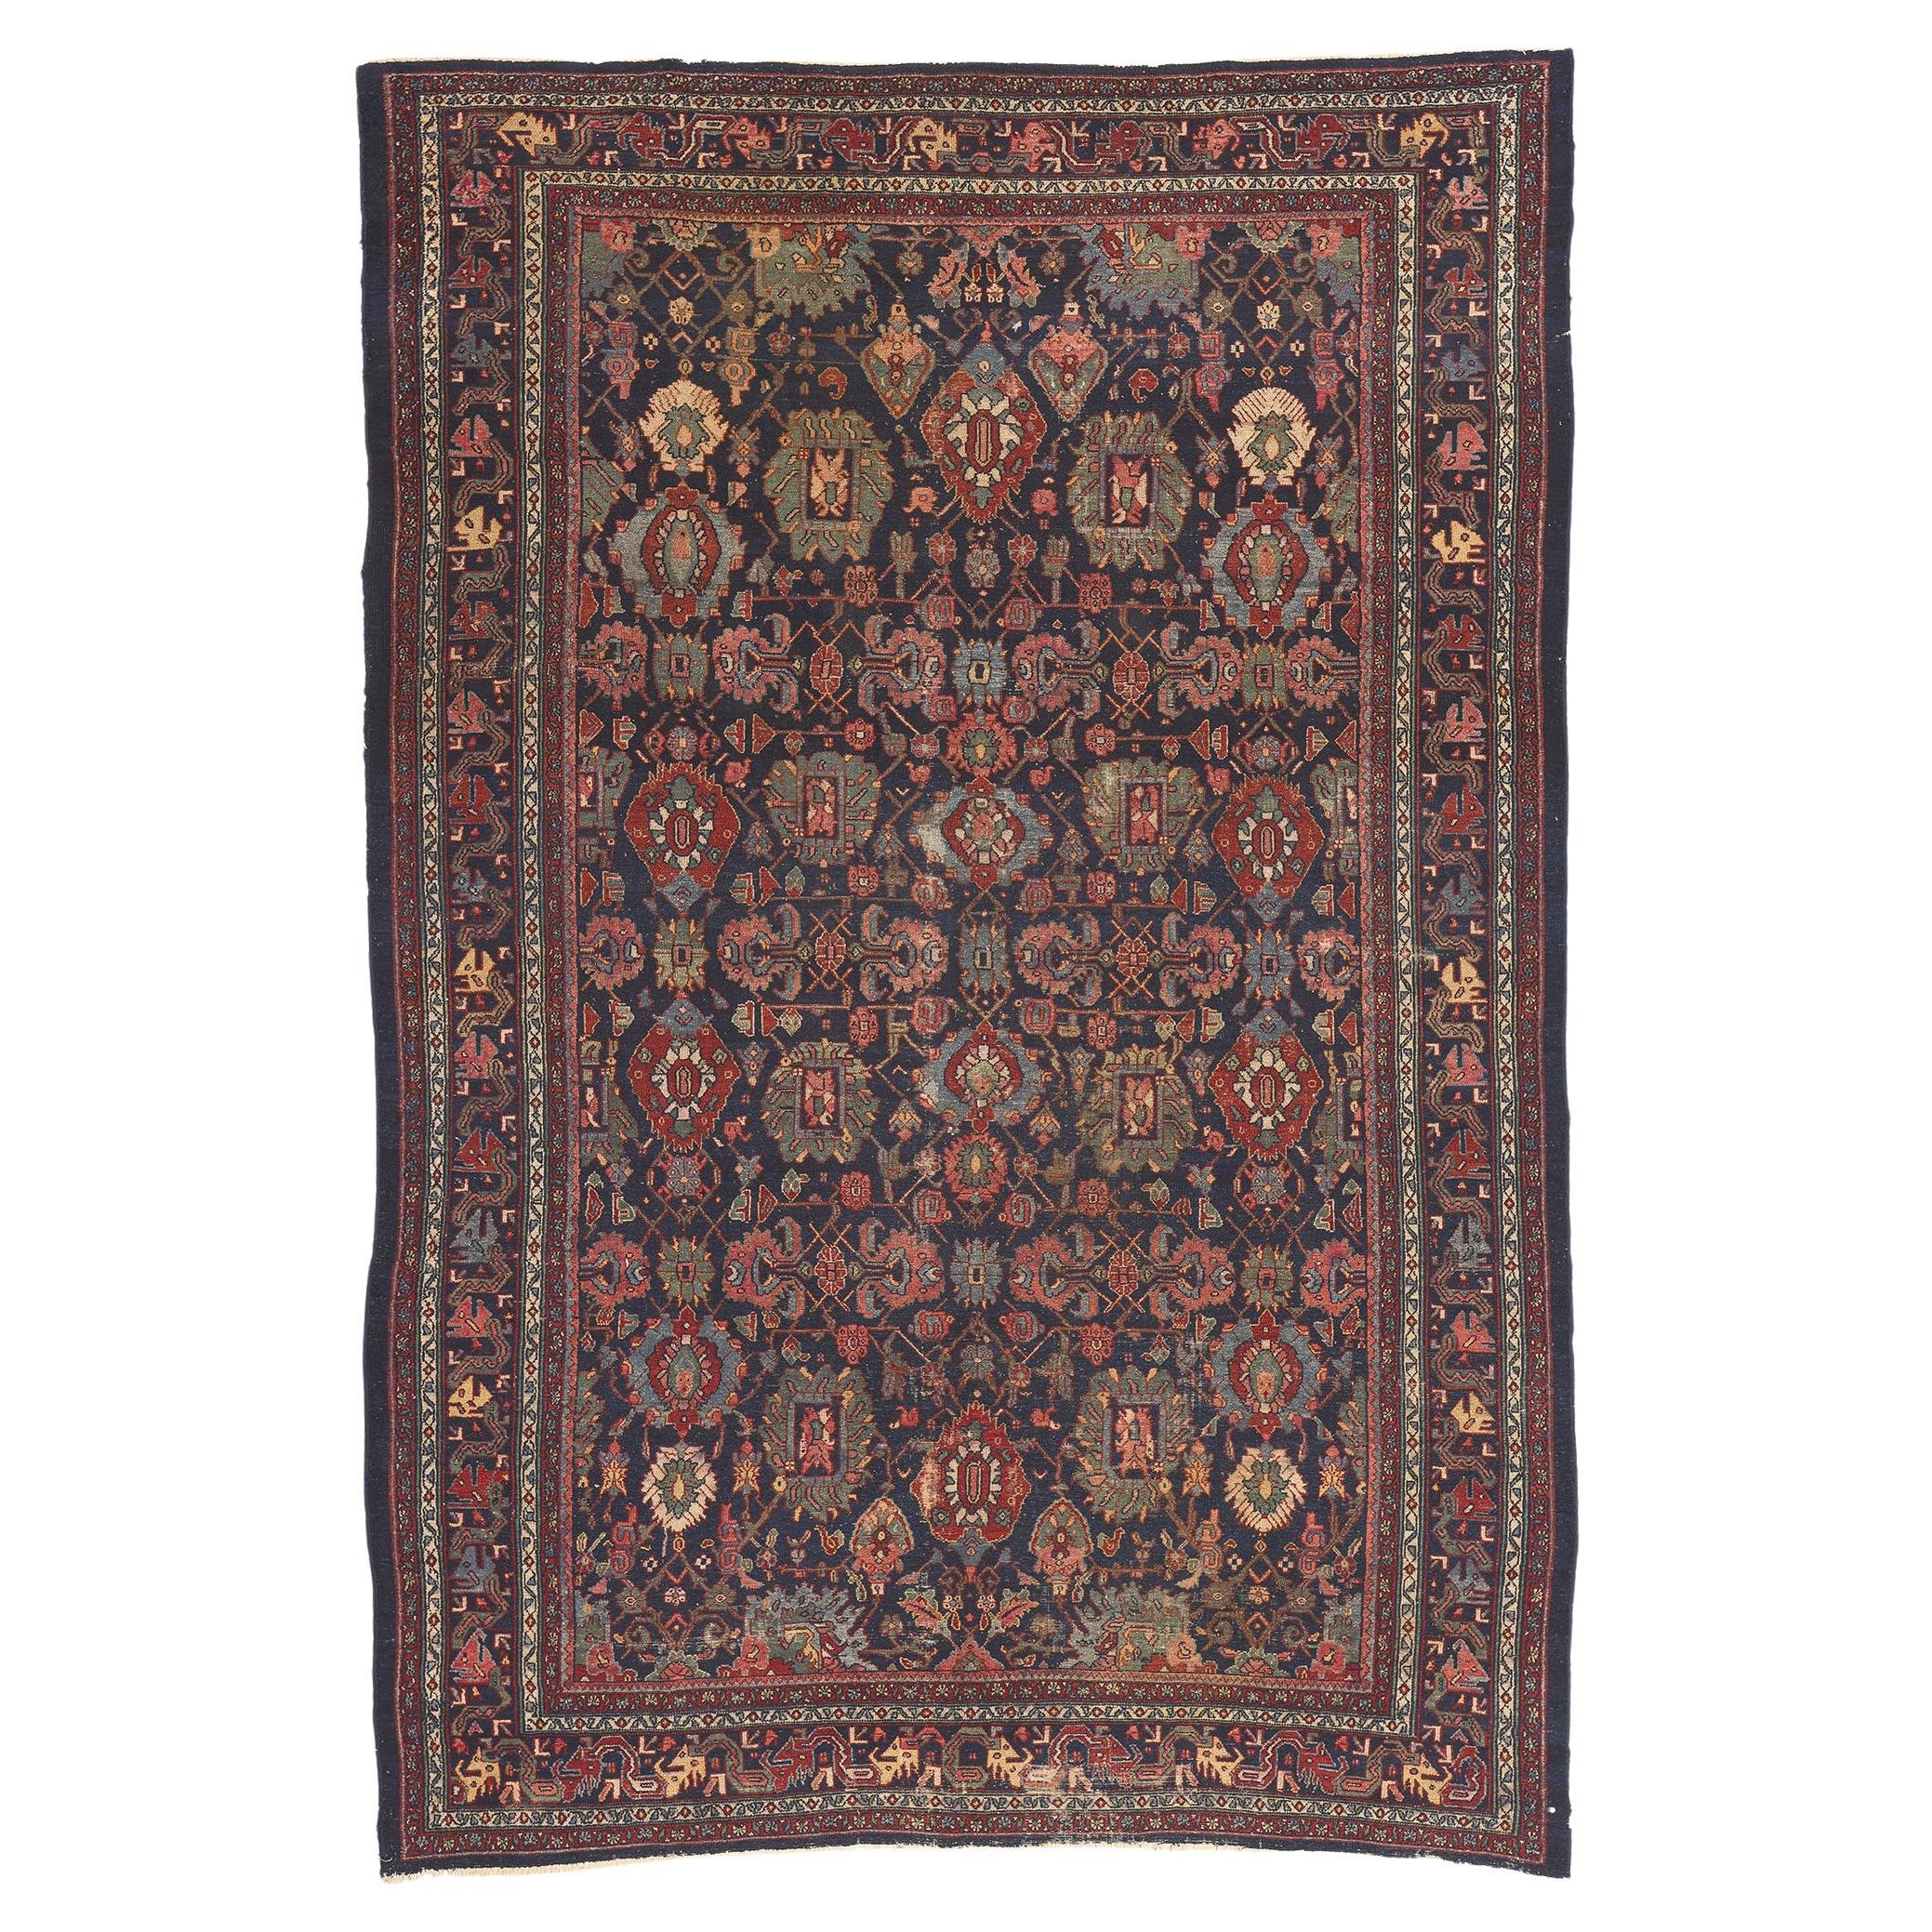 Antique Persian Bibikabad Rug, Traditional Elegance Meets Rustic Sensibility